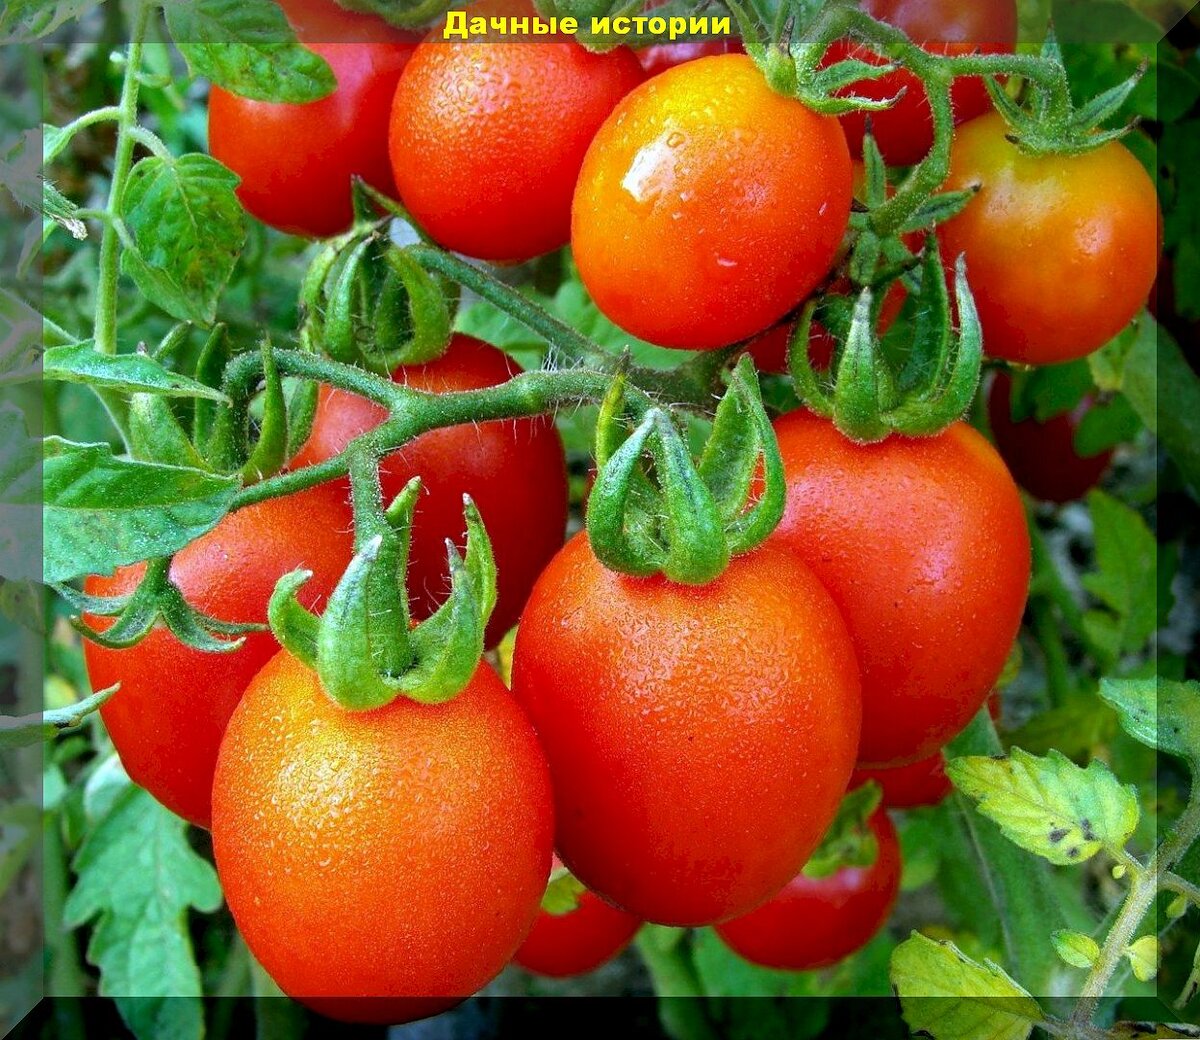 40 килограмм урожая с квадратного метра: огурец и томат о которых дачники слагают легенды